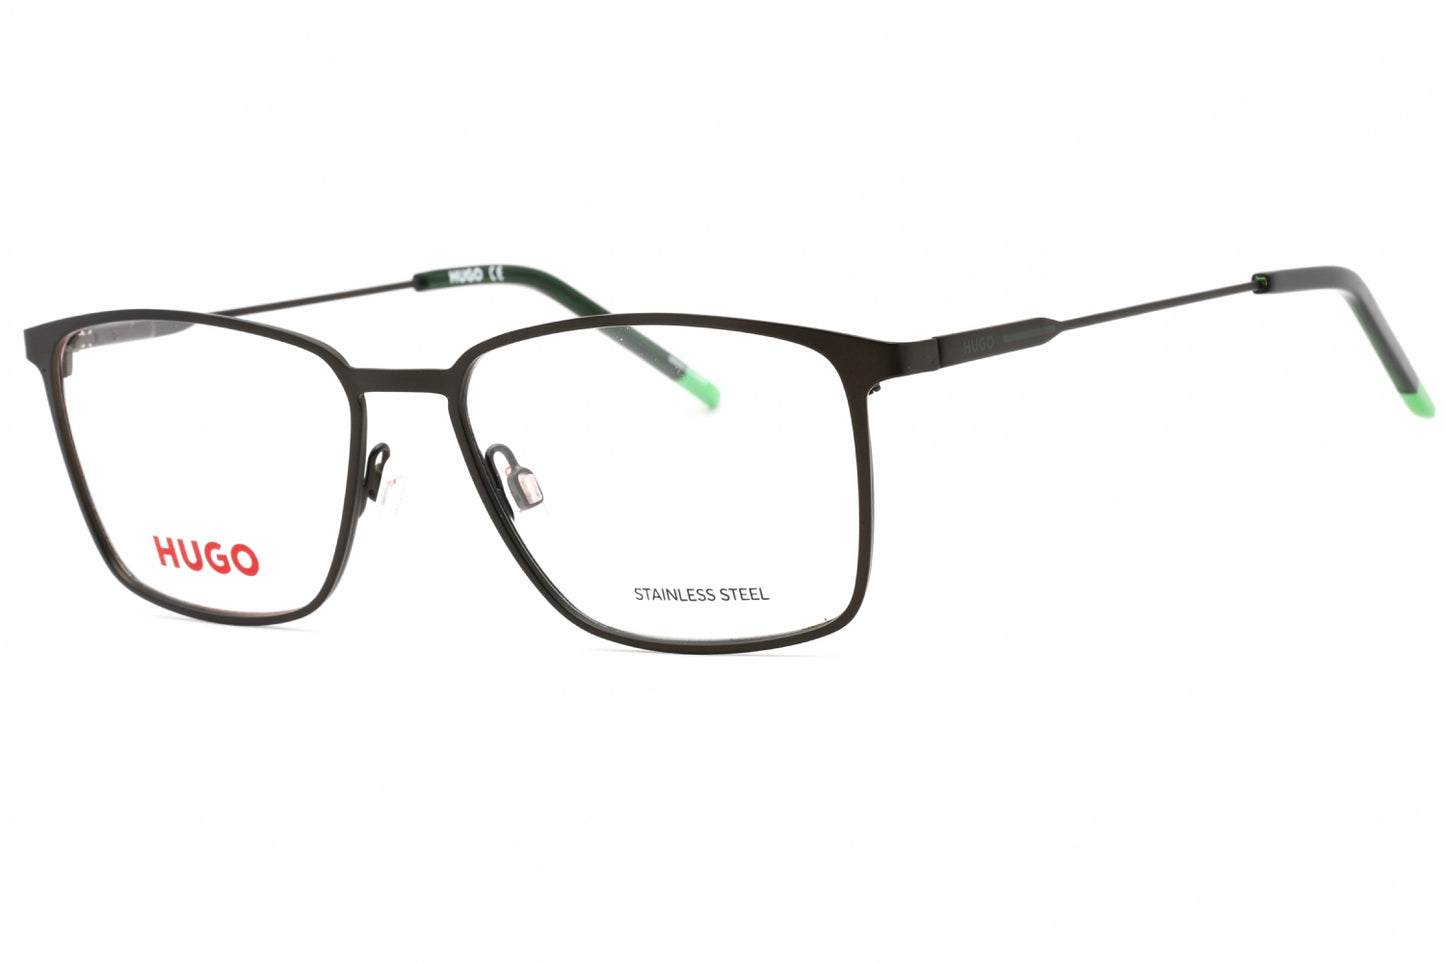 Hugo Boss HG 1181-0SVK 00 54mm New Eyeglasses